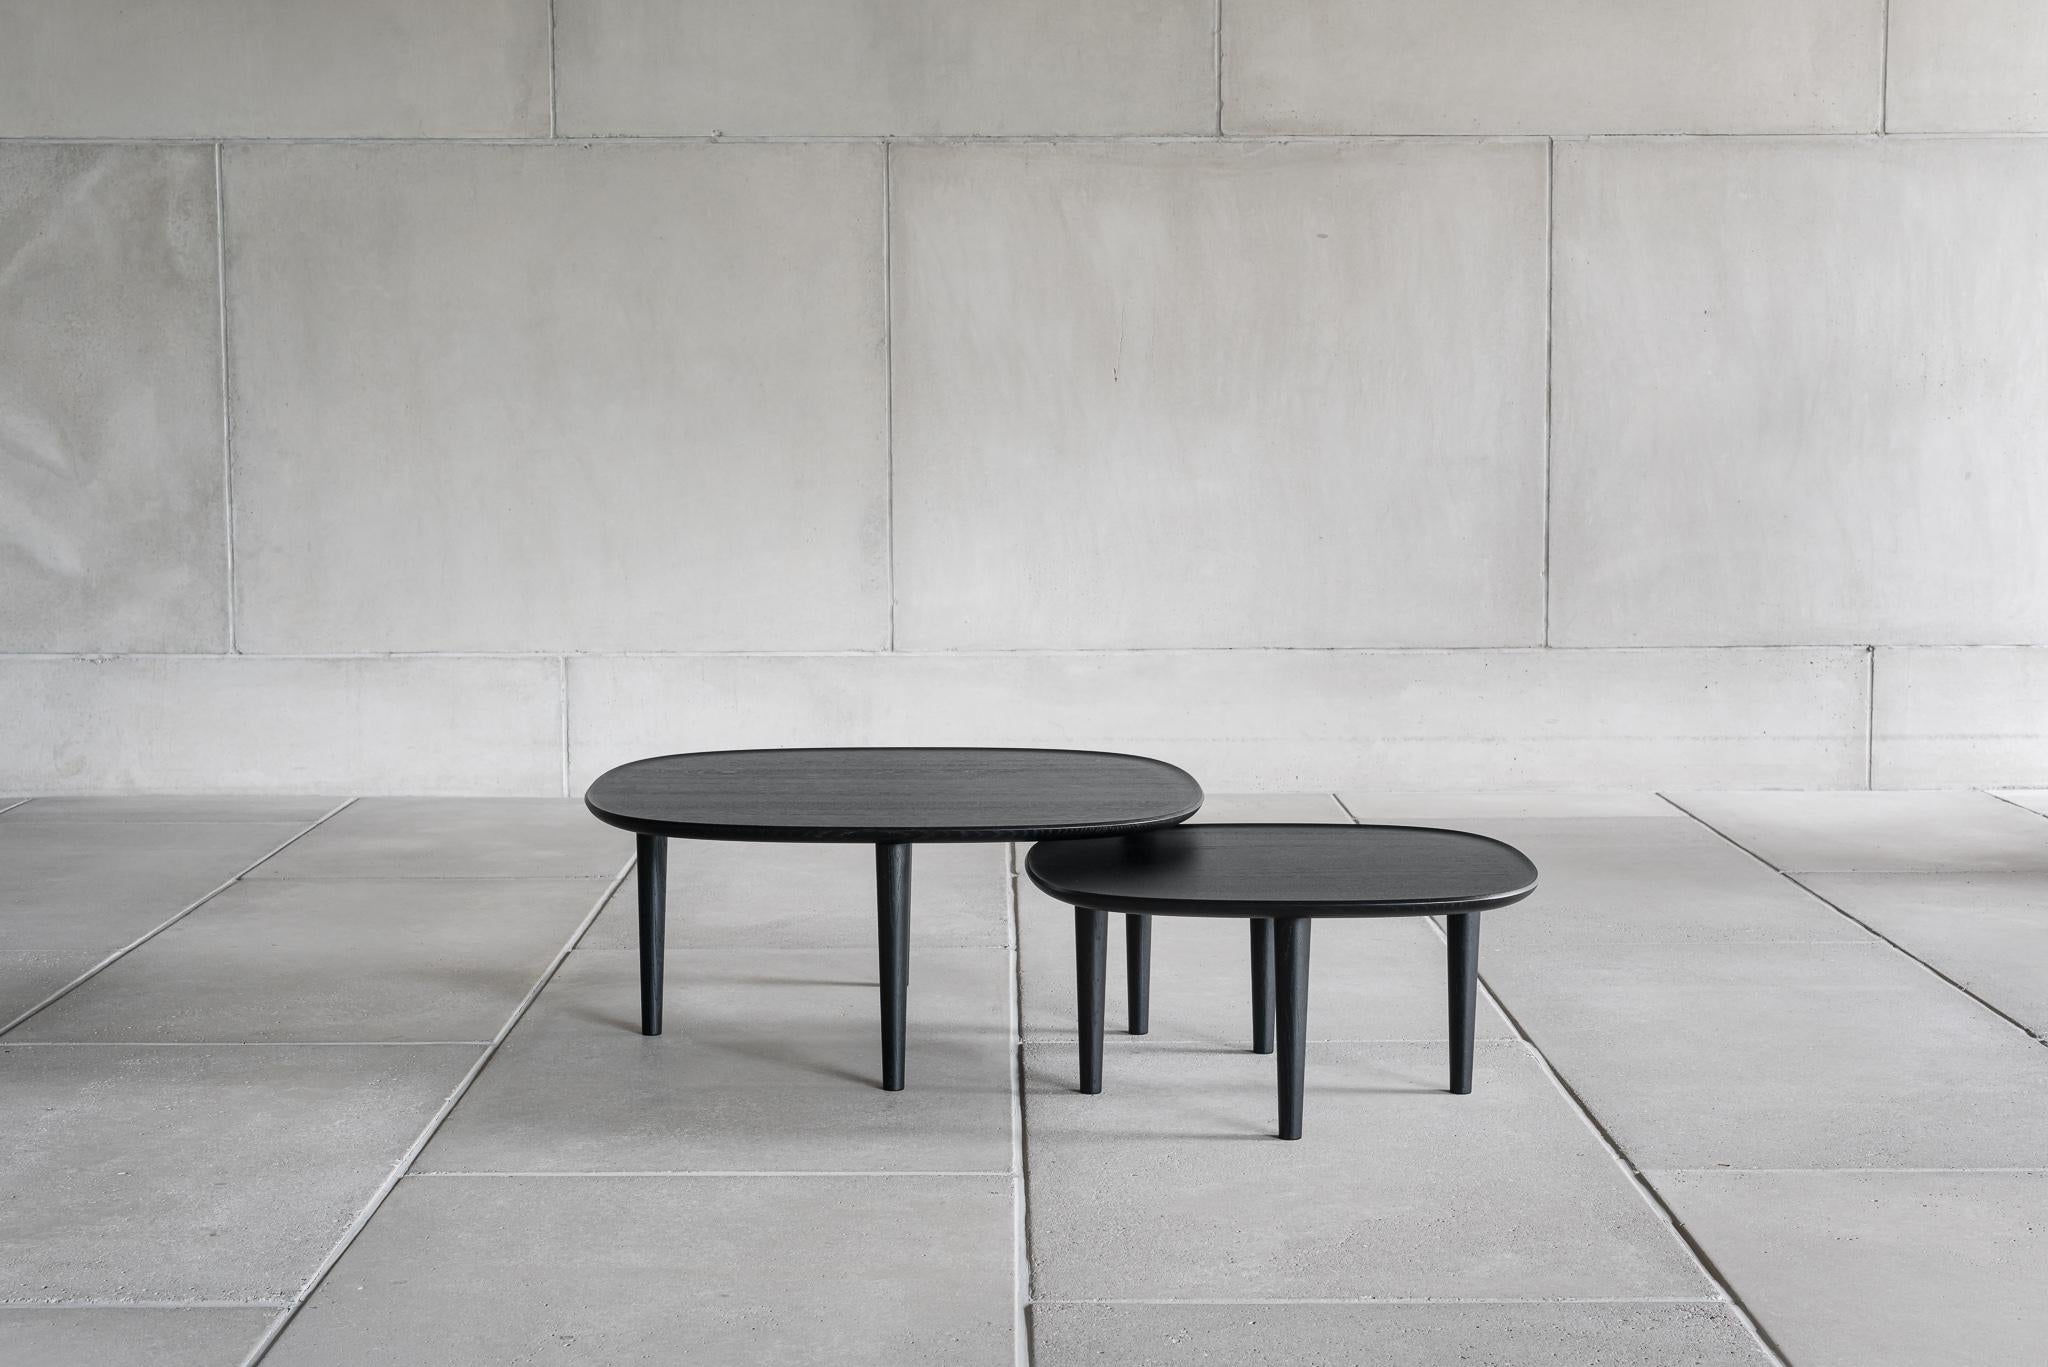 Conçue par les fondateurs de Poiat Studio, Timo Mikkonen et Antti Rouhunkoski, en collaboration avec le maître ébéniste et designer Antrei Hartikainen, la Collection Fiori est un ensemble de tables.  et une sculpture au sol. L'idée commune des